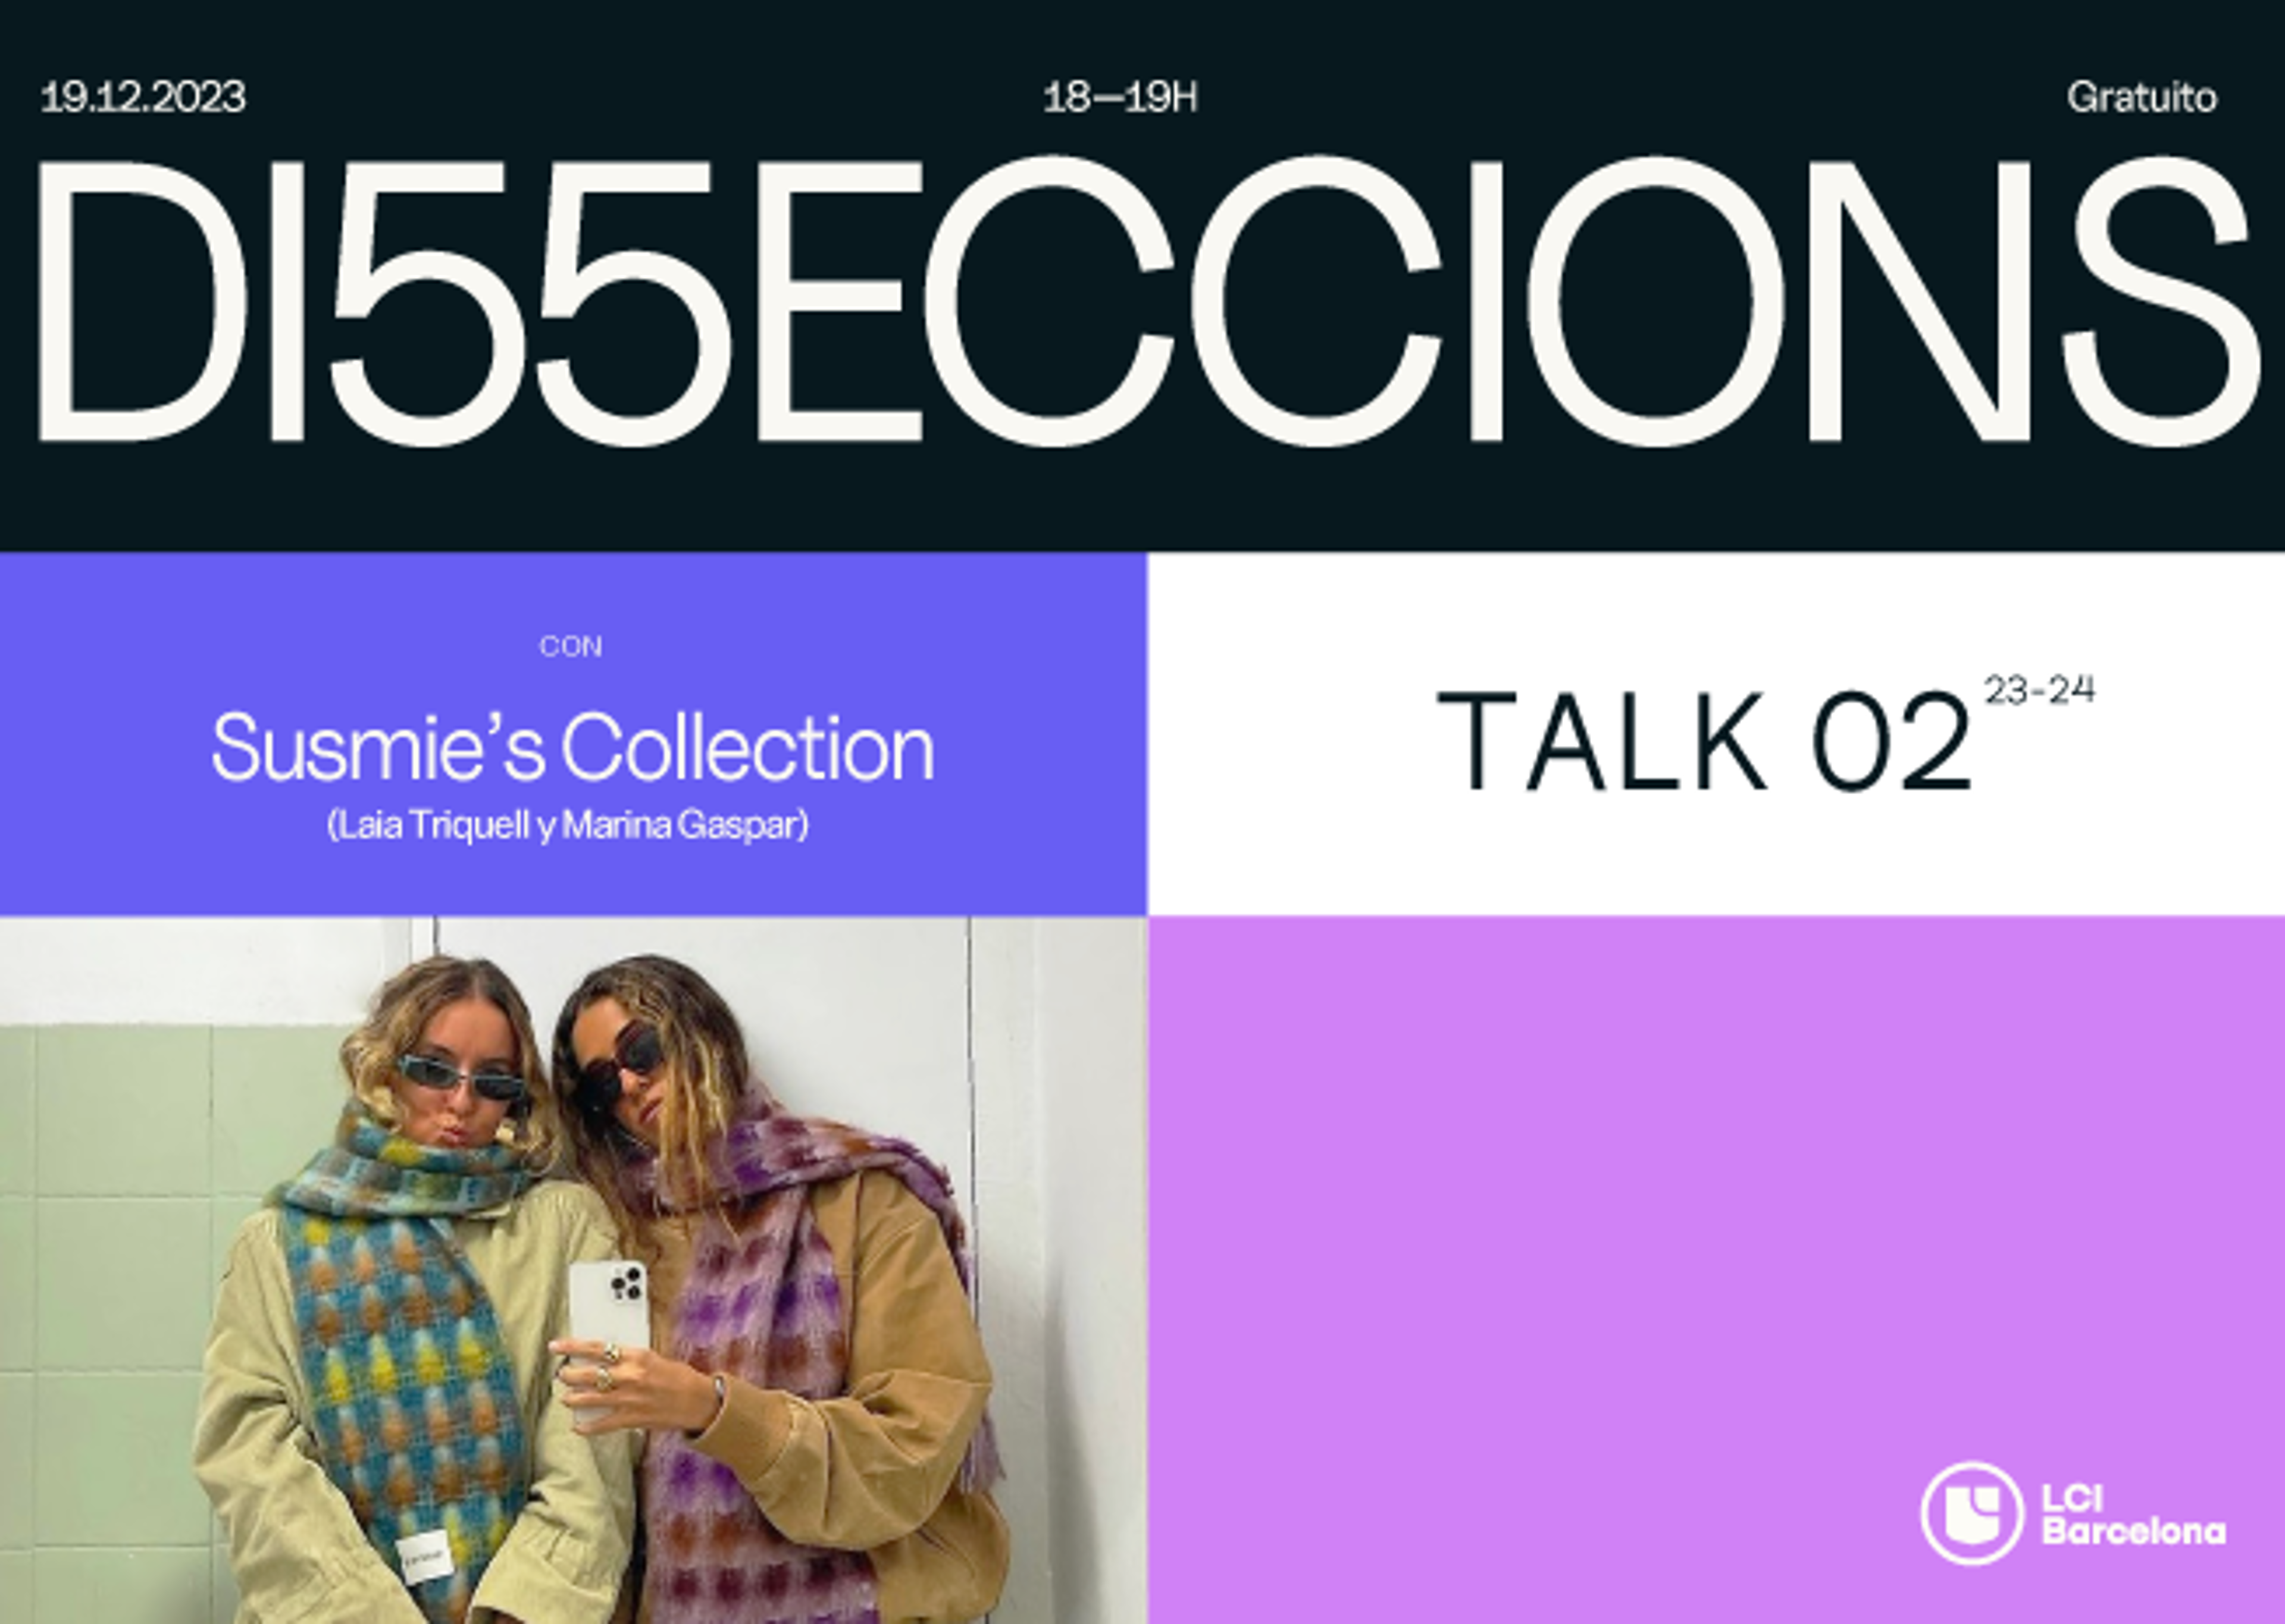 Gràfic promocional per a l'esdeveniment 'D15ECCIONS' el 19.12.2023 presentant la xerrada 'Col·lecció de Susmie', mostrant dues dones fent-se un selfie.